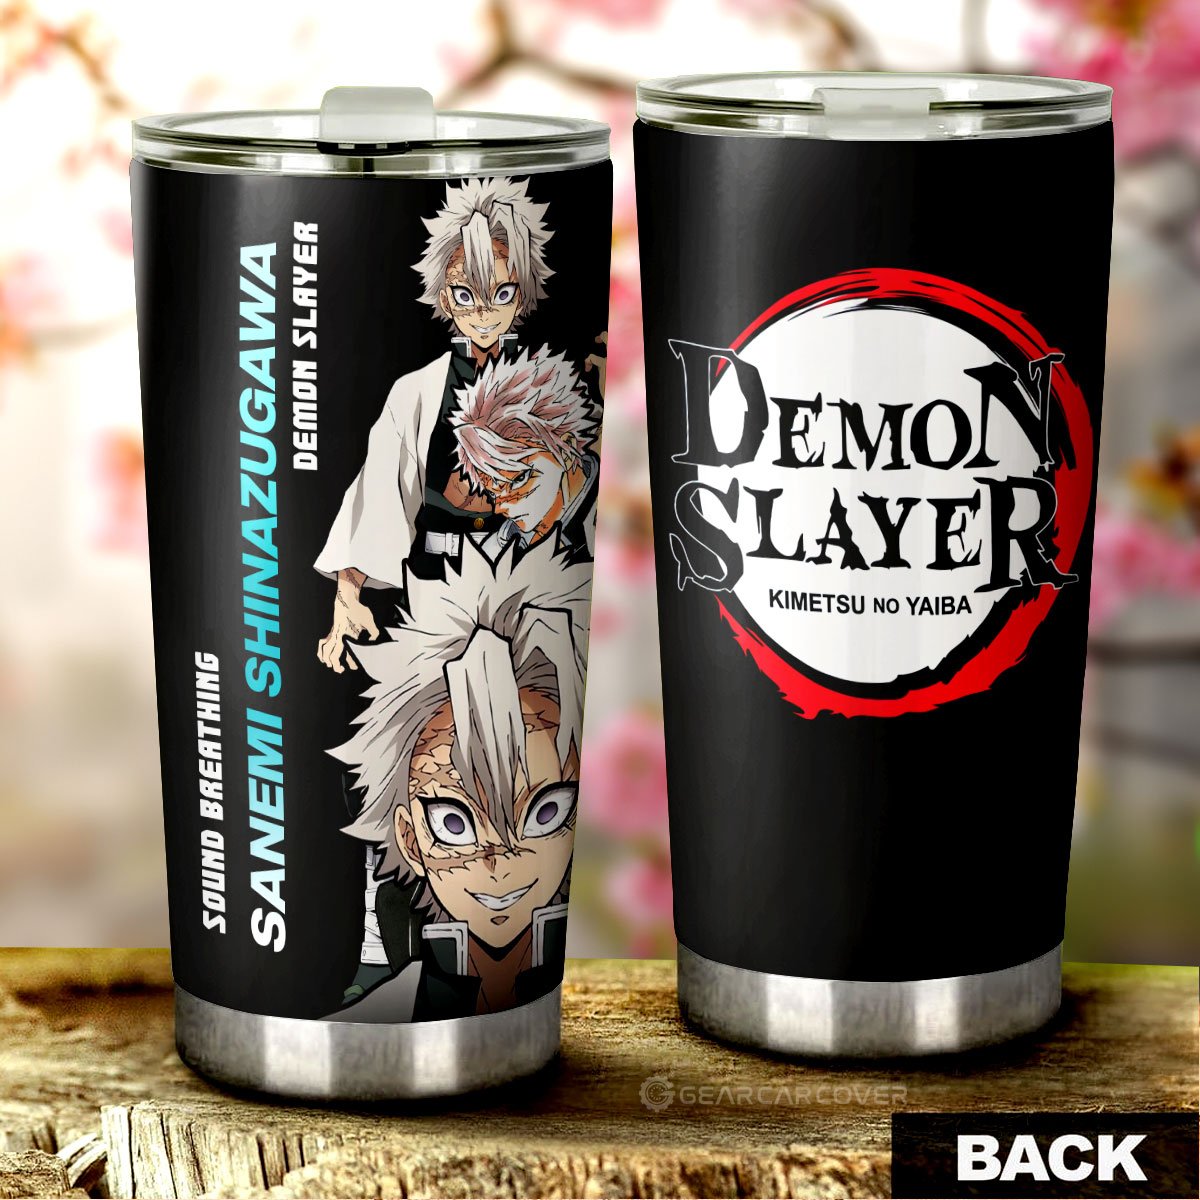 Sanemi Shinazugawa Tumbler Cup Custom Demon Slayer Anime Gifts Idea For Fans